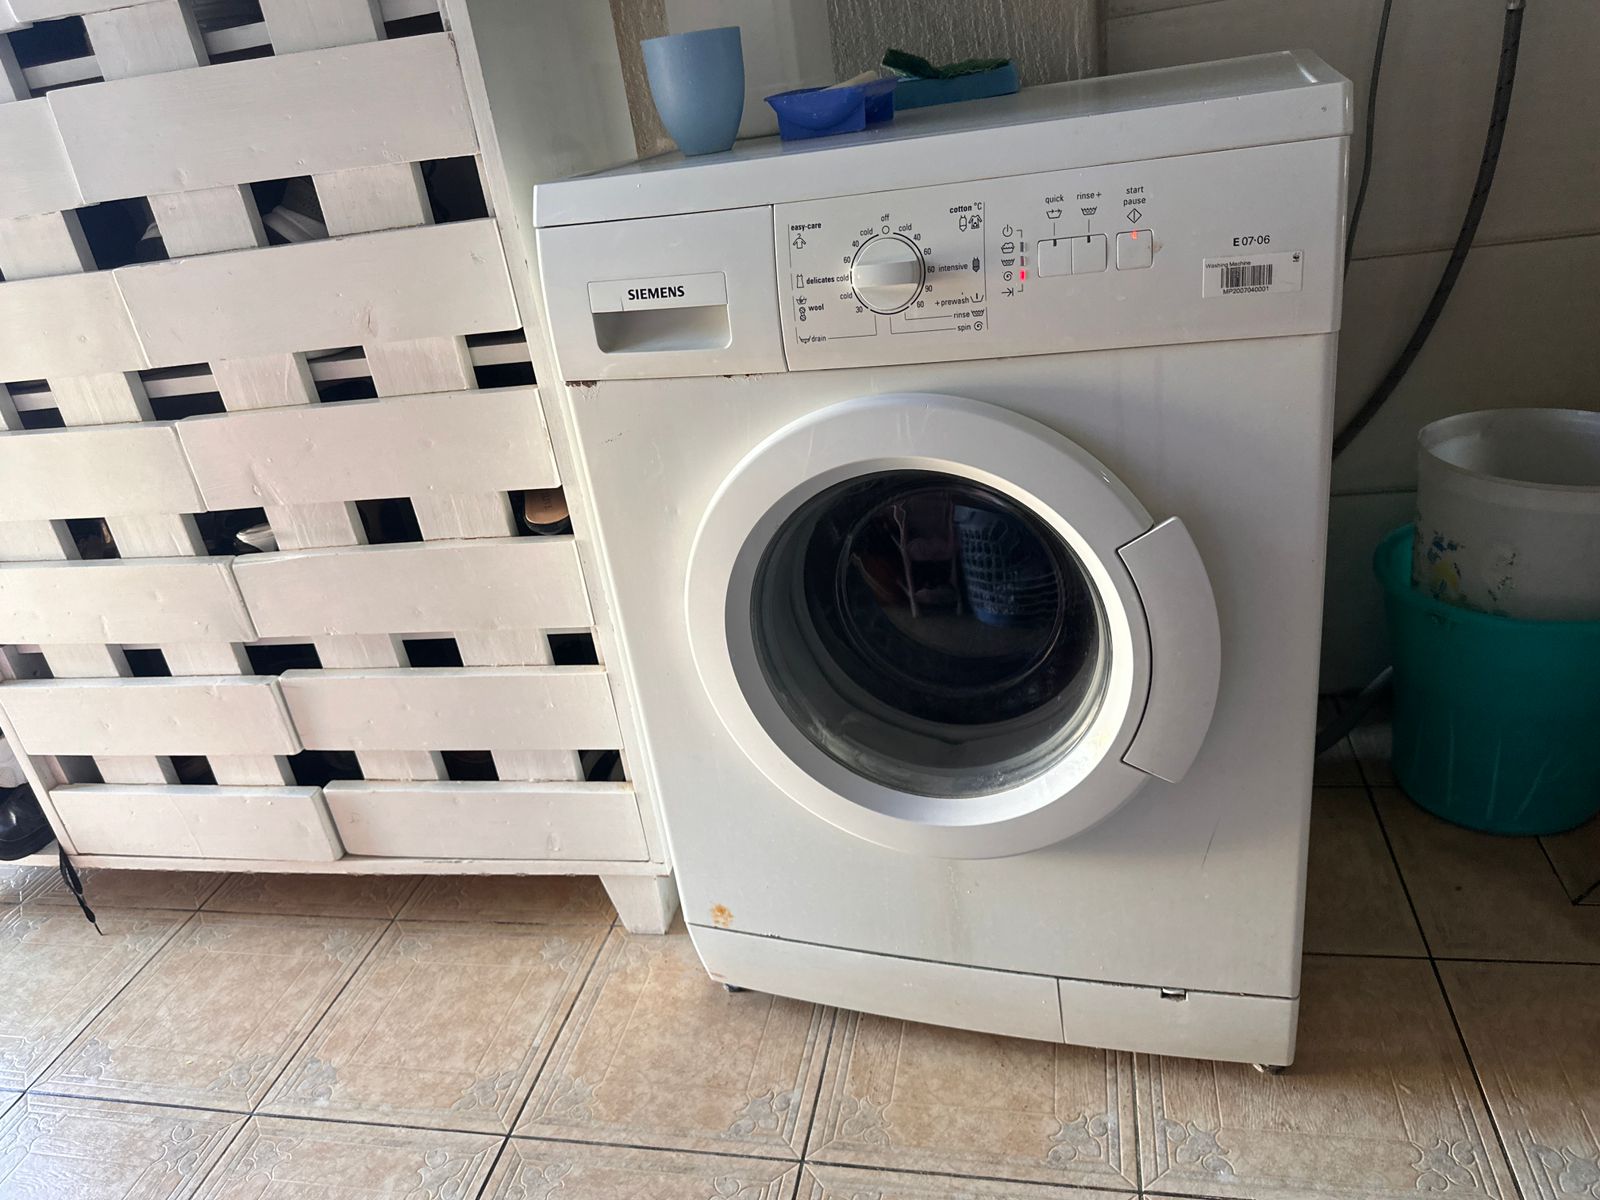 Slightly Used Washing Machine